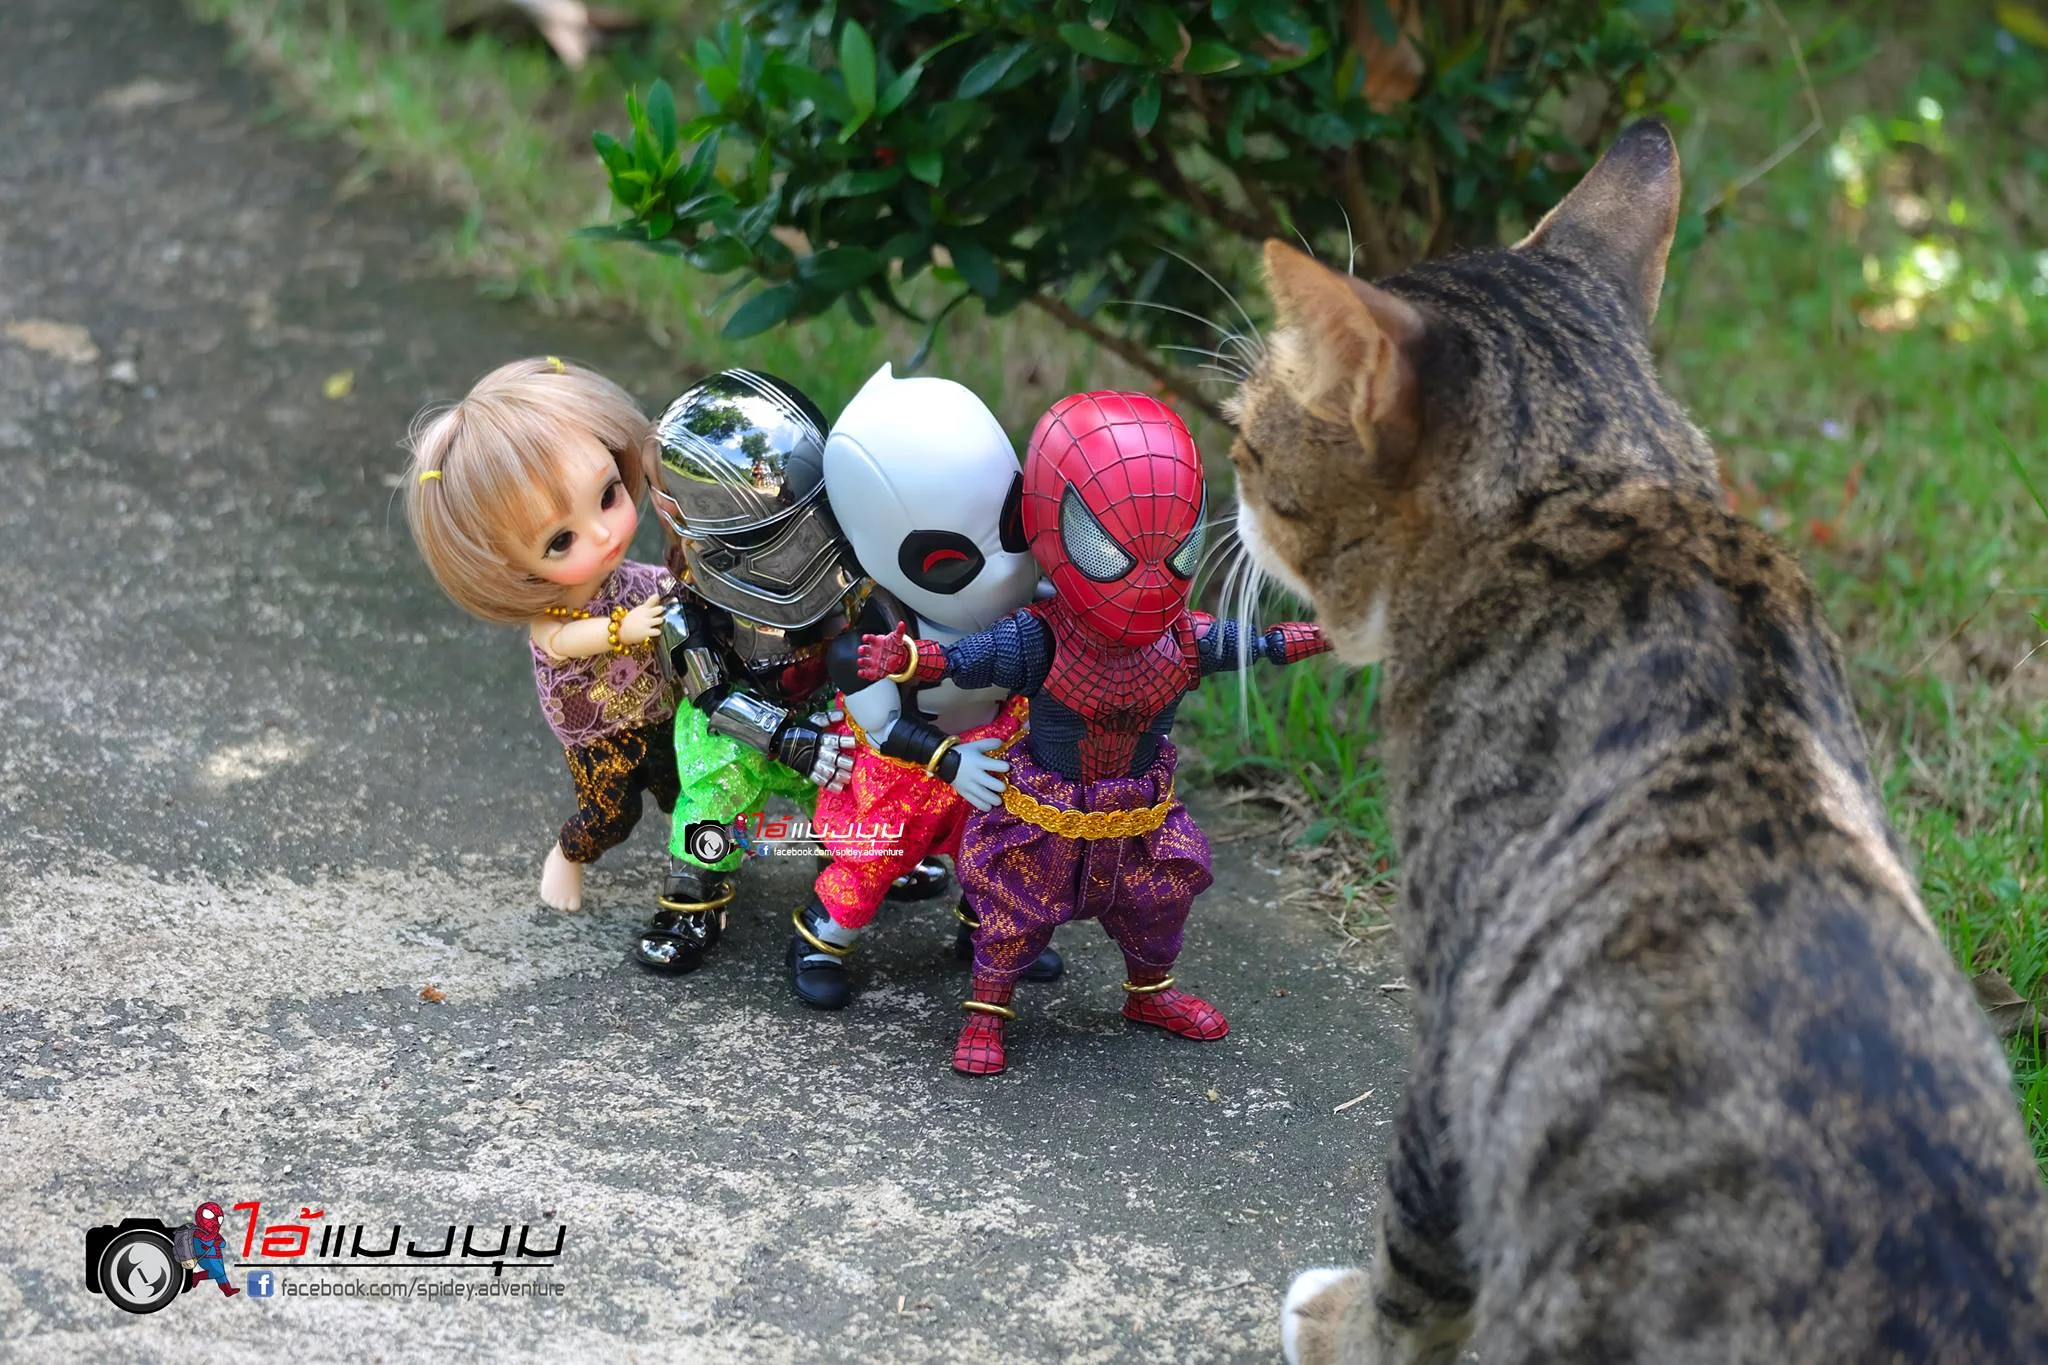 Художник додав до фото з котиками зображення Людини-павука – це виглядає дуже смішно - фото 459366